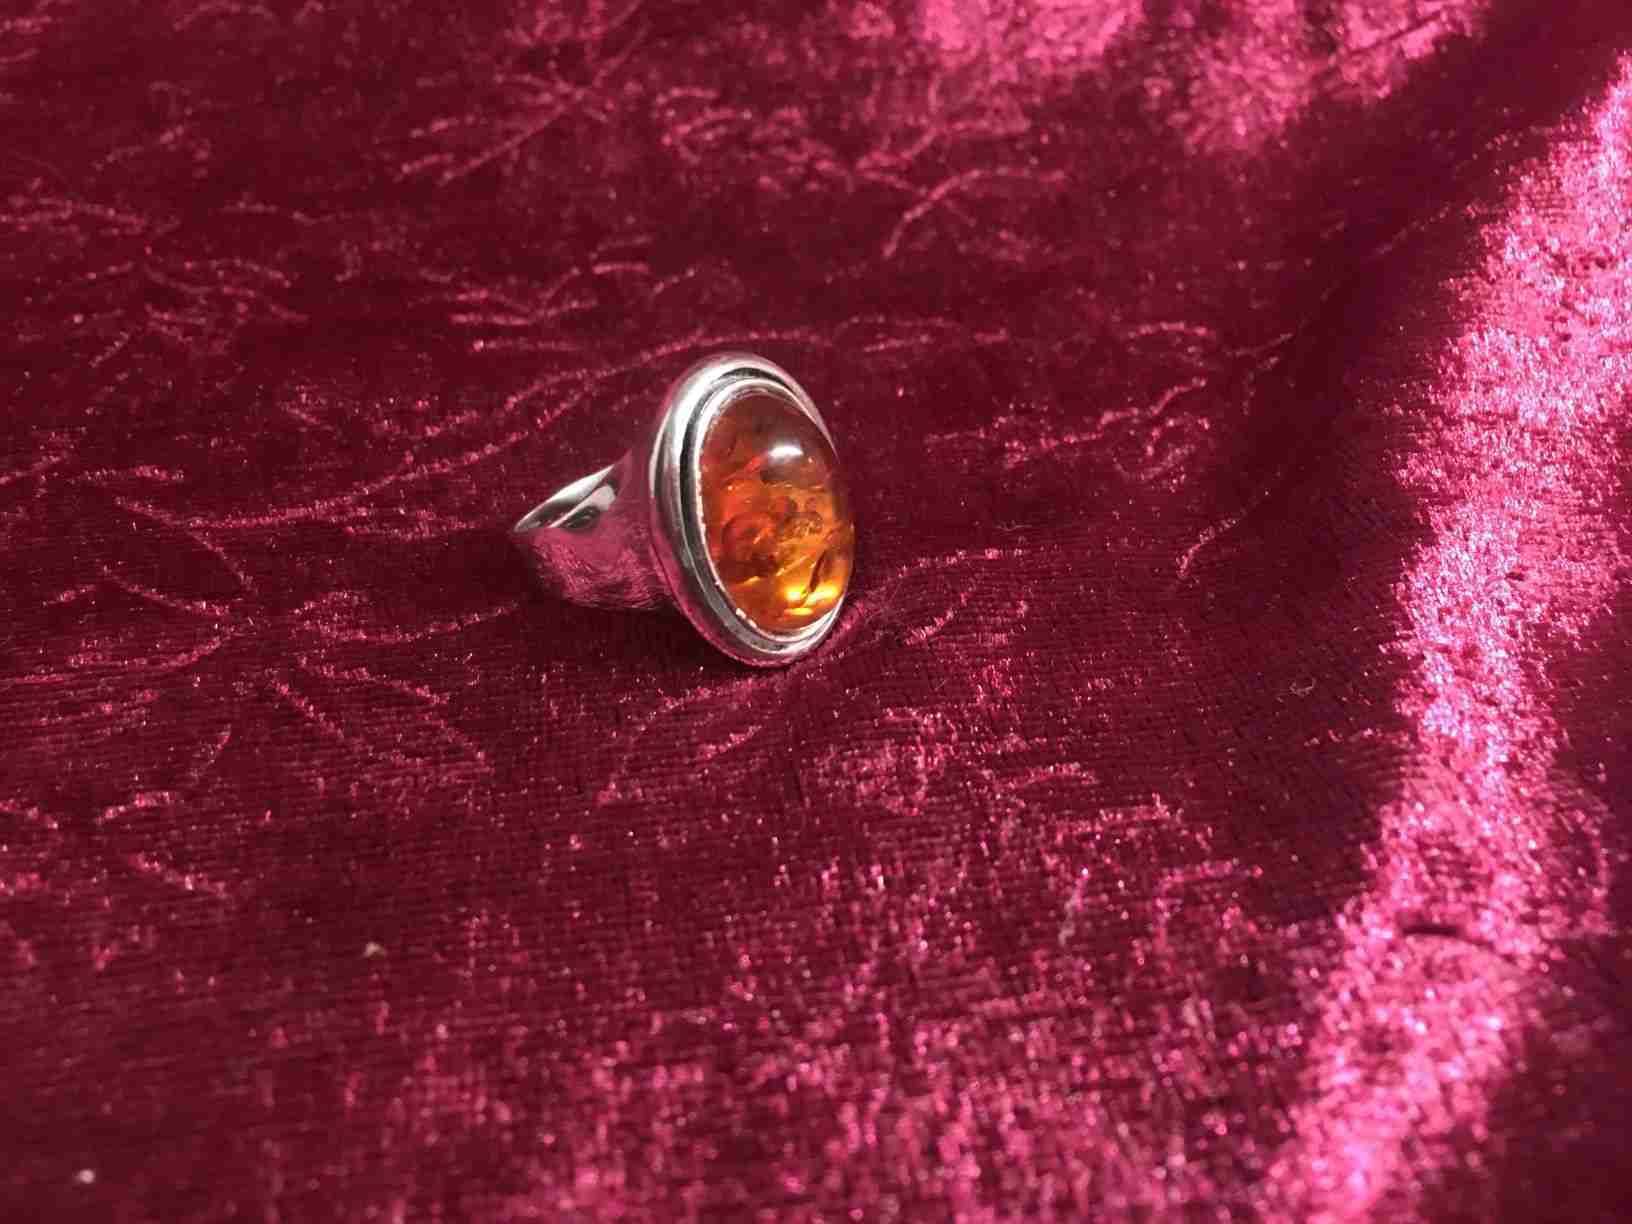 Solid ring i sterlingsølv (925S) der på smuk vis indfatter et unikt ravstykke i Baltisk blodrav. Perfekt vintage stand. Solgt